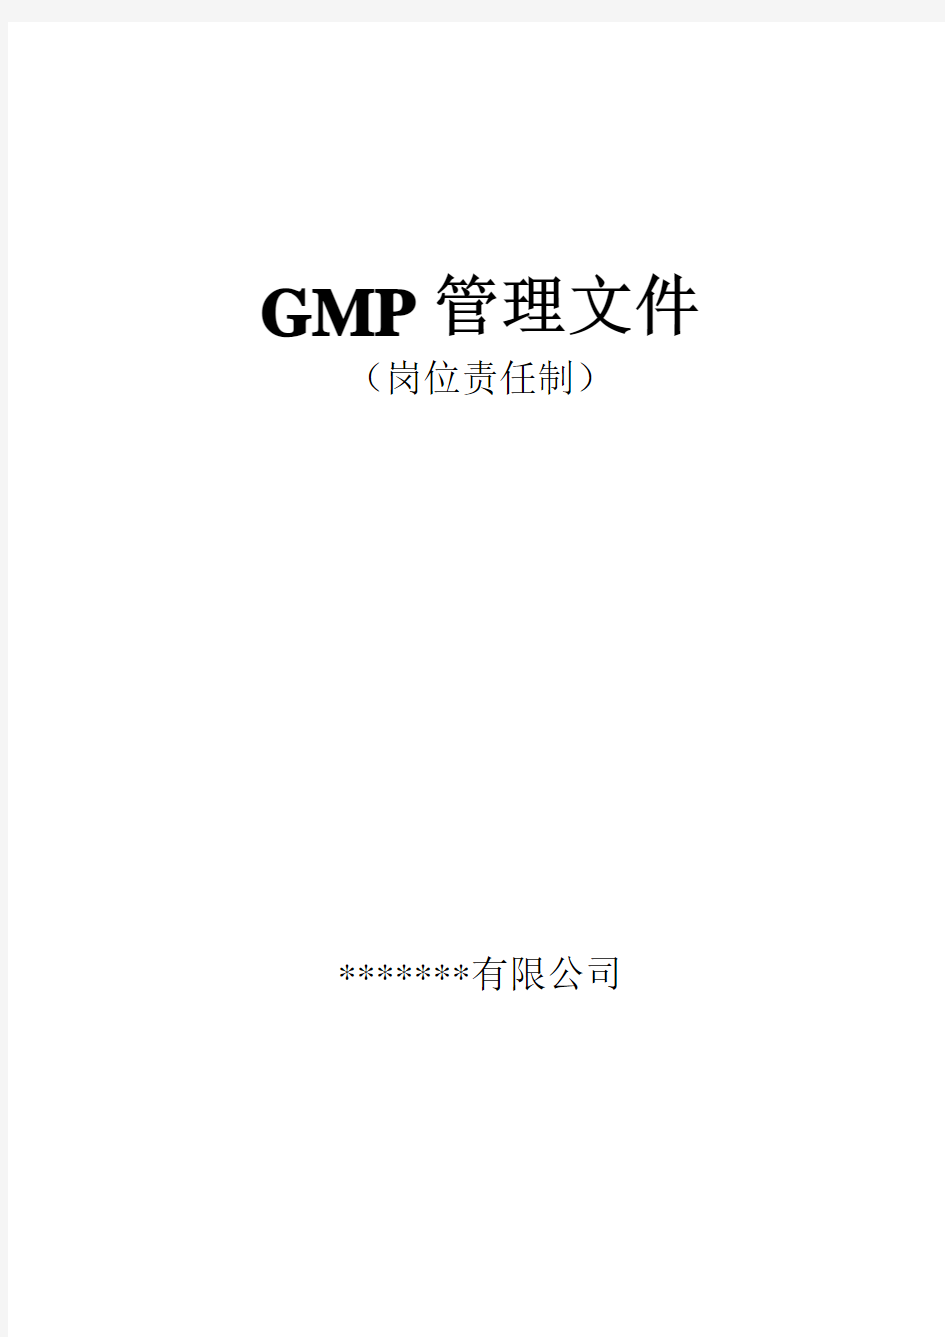 GMP管理文件体系--岗位责任制解读